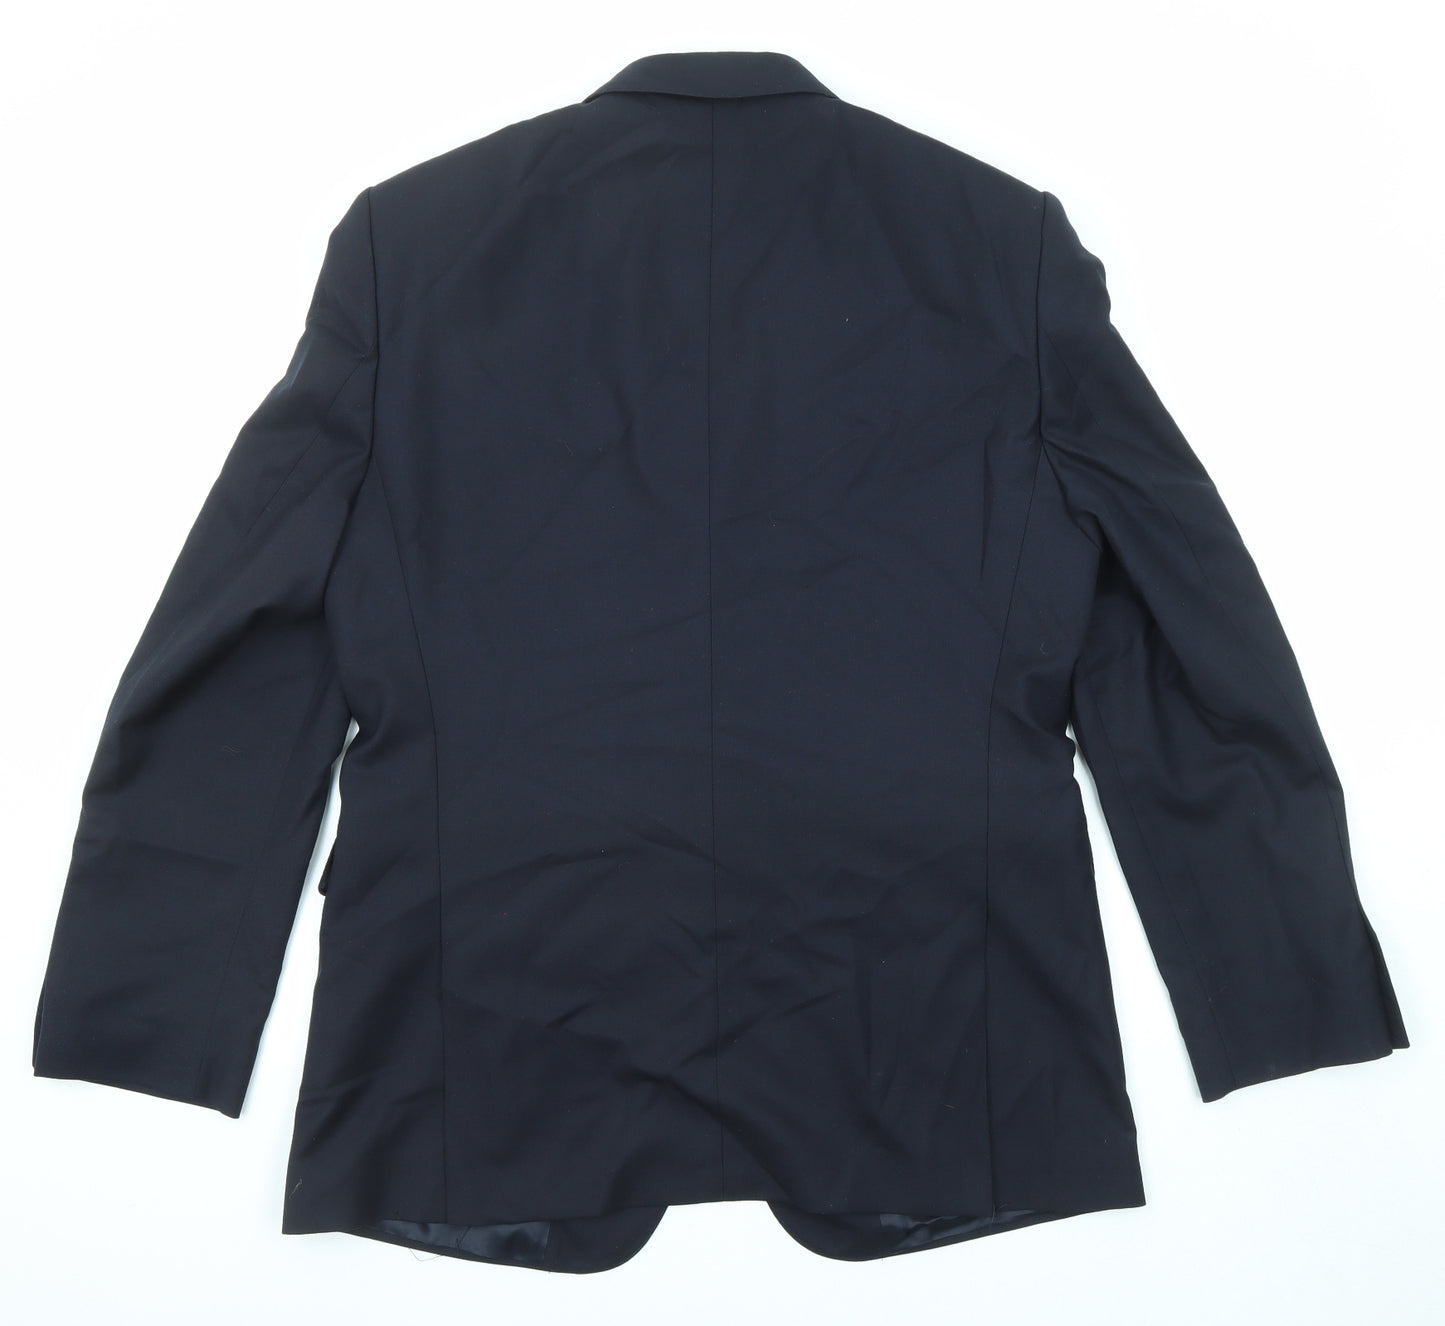 Jaeger Mens Blue Wool Jacket Suit Jacket Size 42 Regular